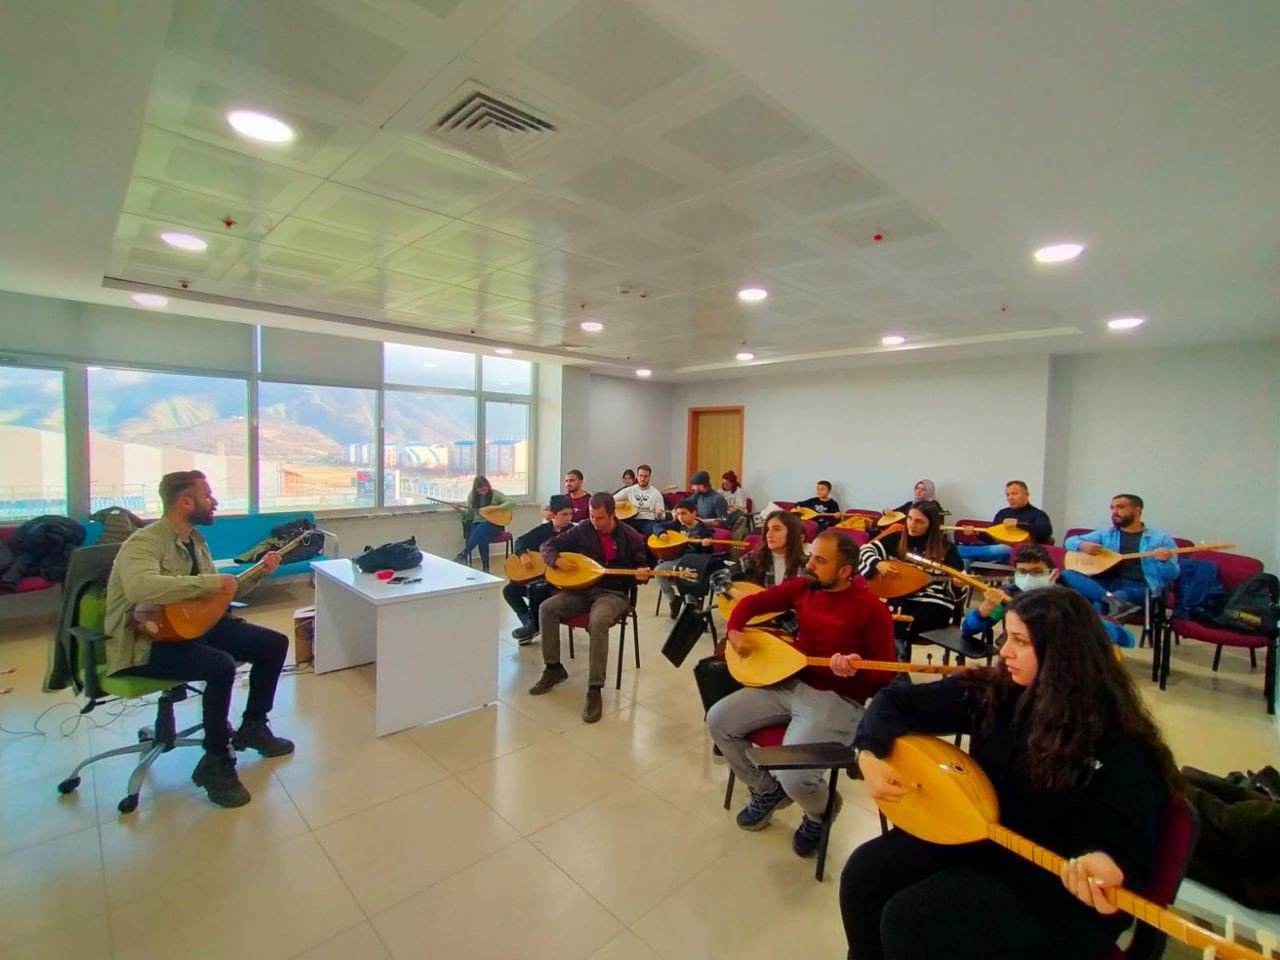 Tunceli Halk Eğitim Merkezi, 3 bin 118 kişiyi sertifikalandırdı